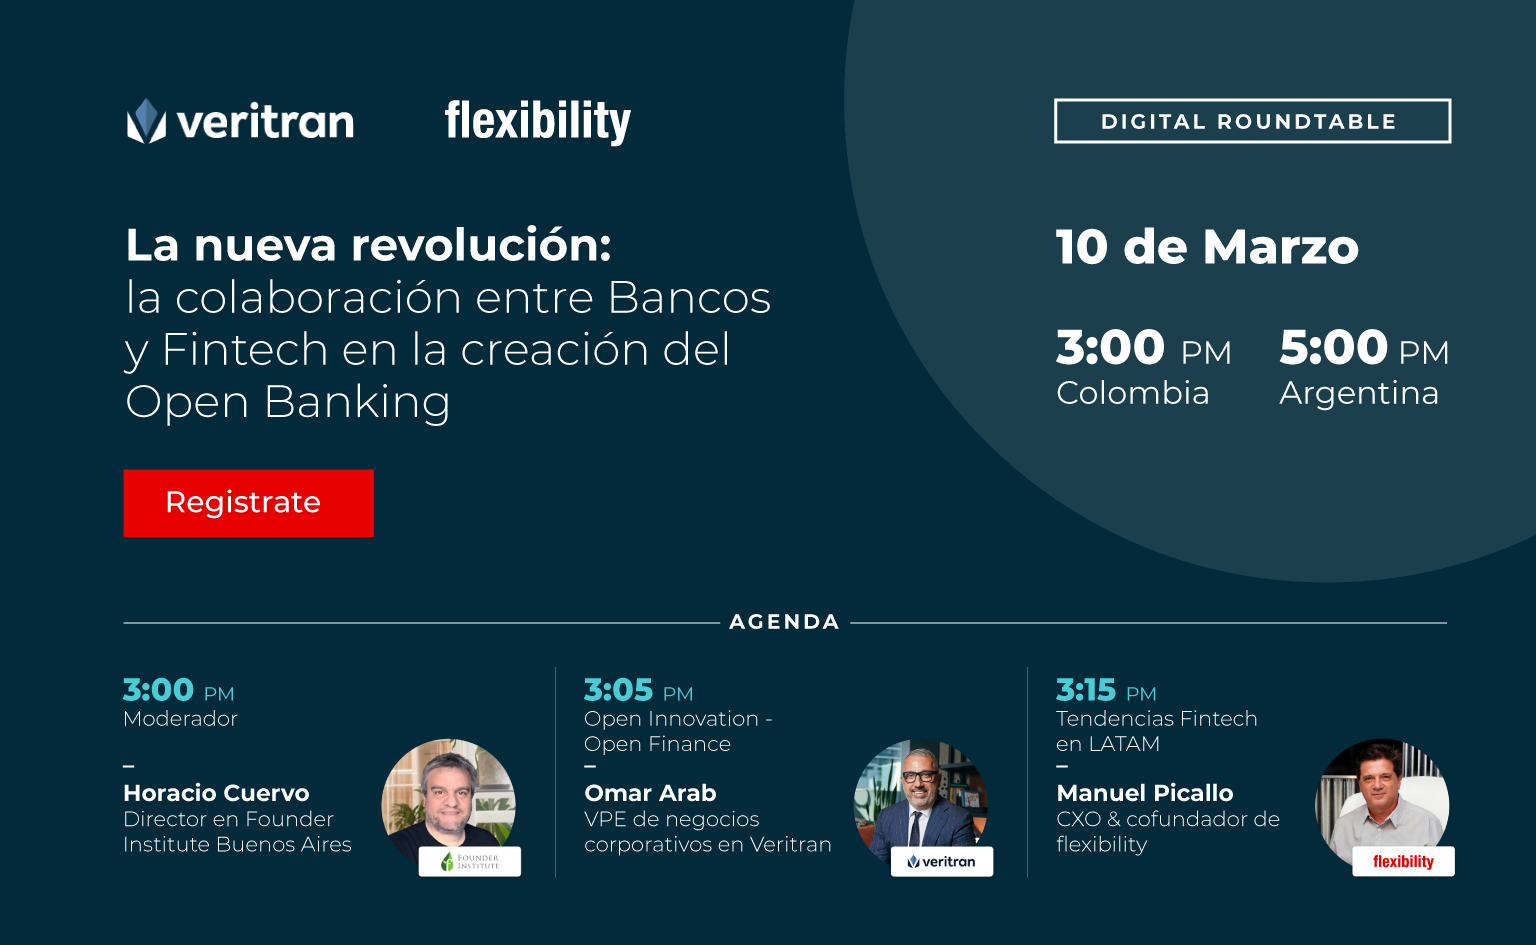 Digital Roundtable: La Nueva Revolución: la colaboración entre Bancos y Fintech para la creación del Open Banking